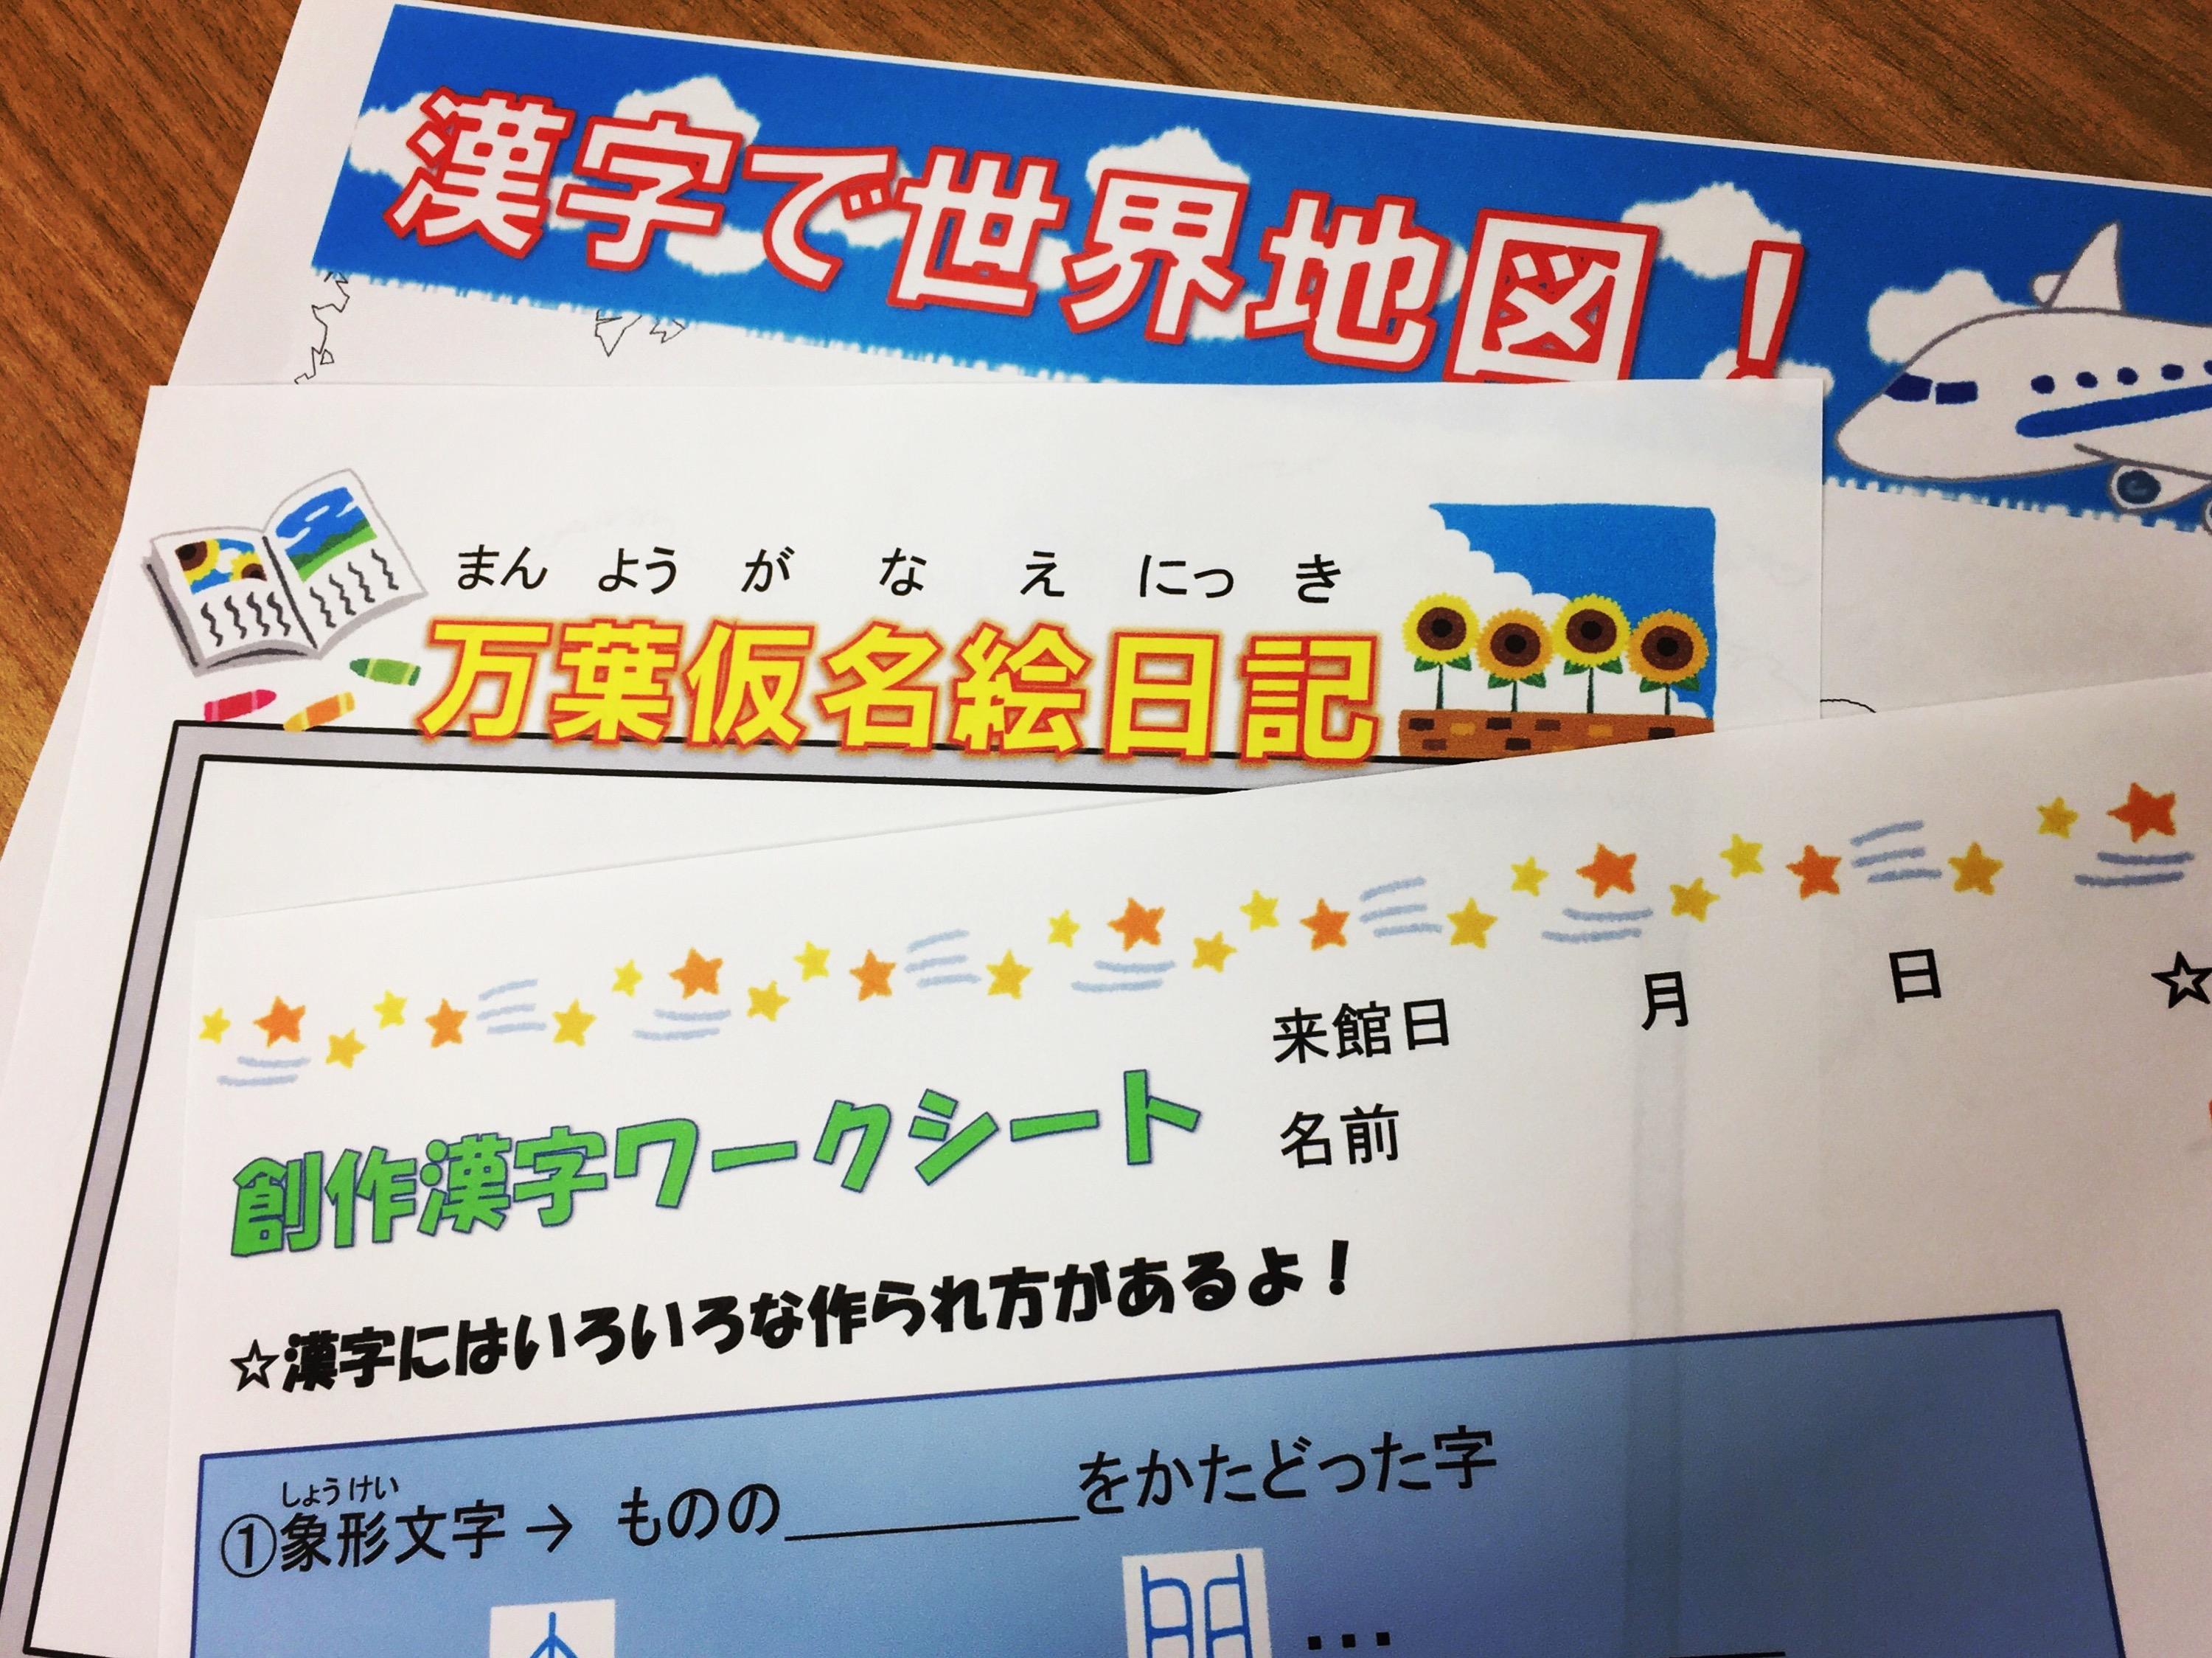 ご来館者対象 7月19日 9月1日 夏休みワークシート配布 最新情報 漢検 漢字博物館 図書館 漢字ミュージアム